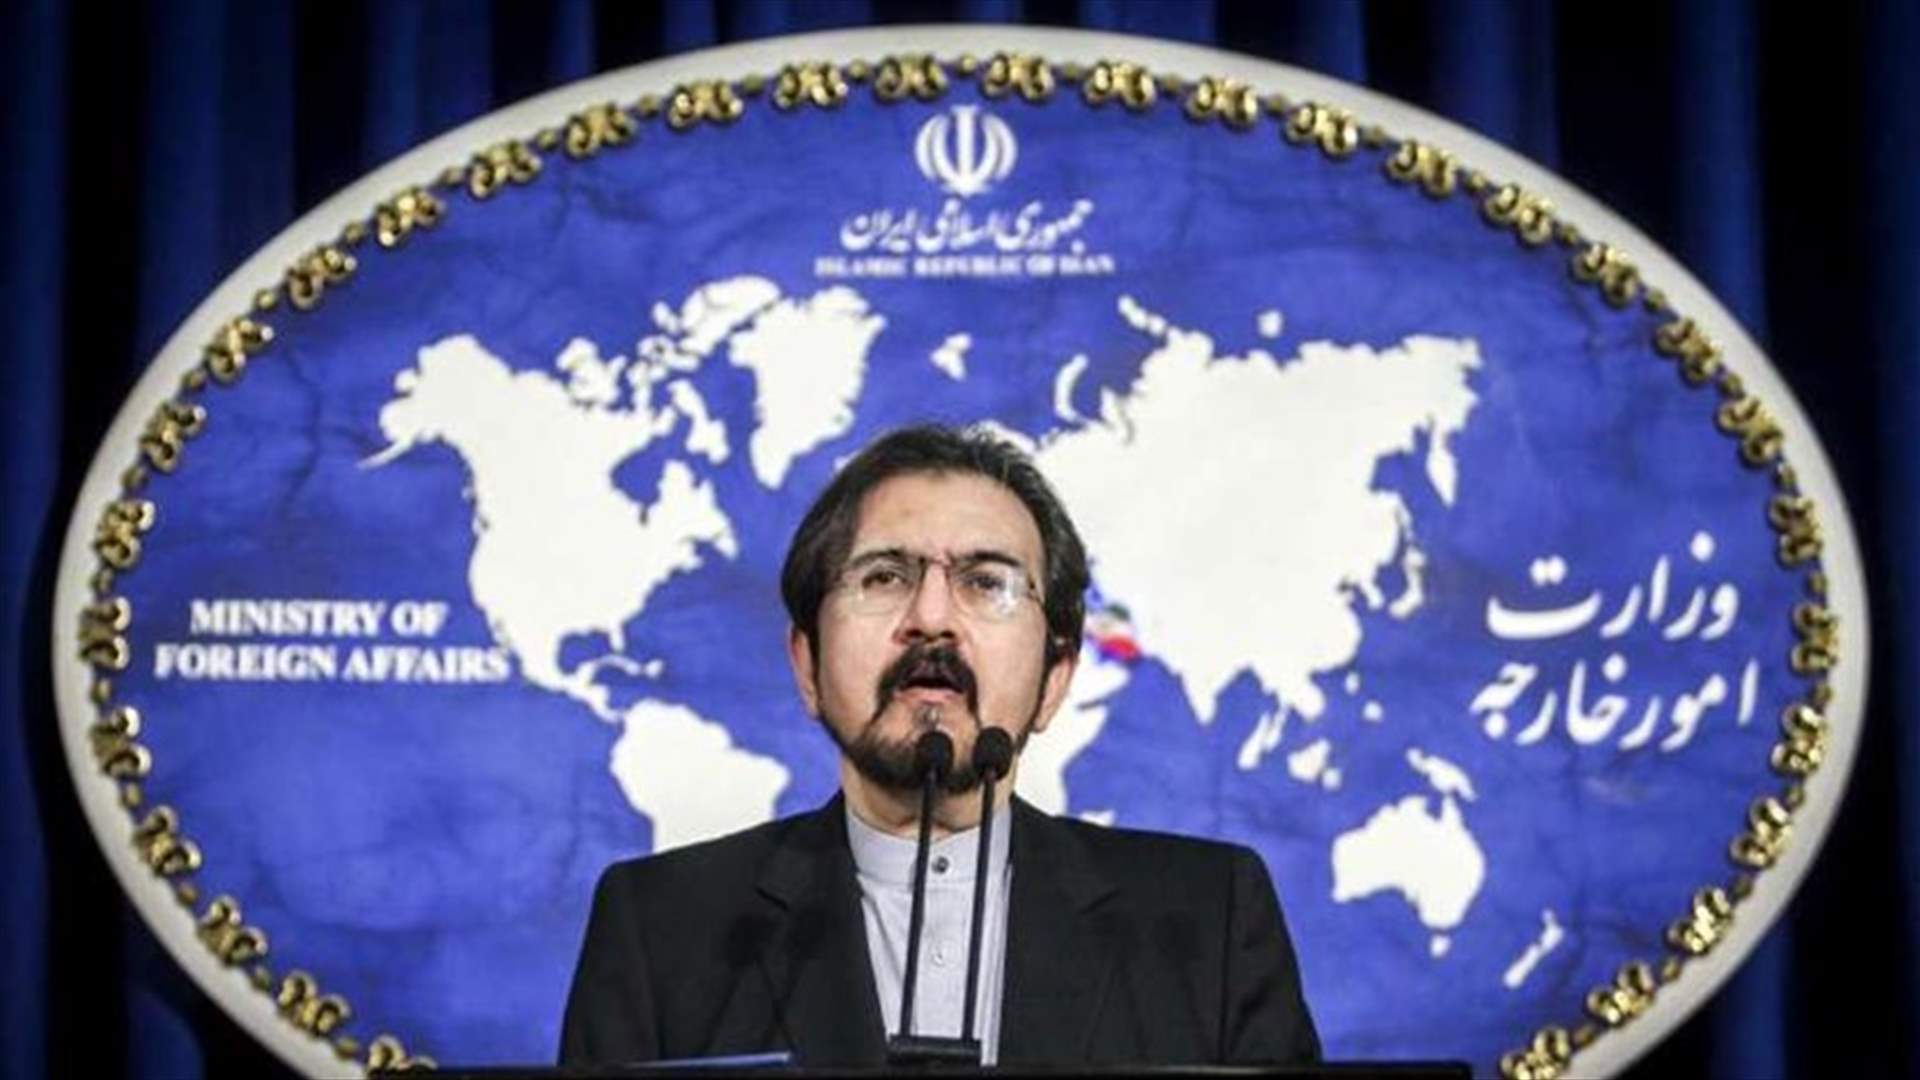 إيران تتهم شرطة فرنسا ببطء الاستجابة لهجوم على سفارتها في باريس